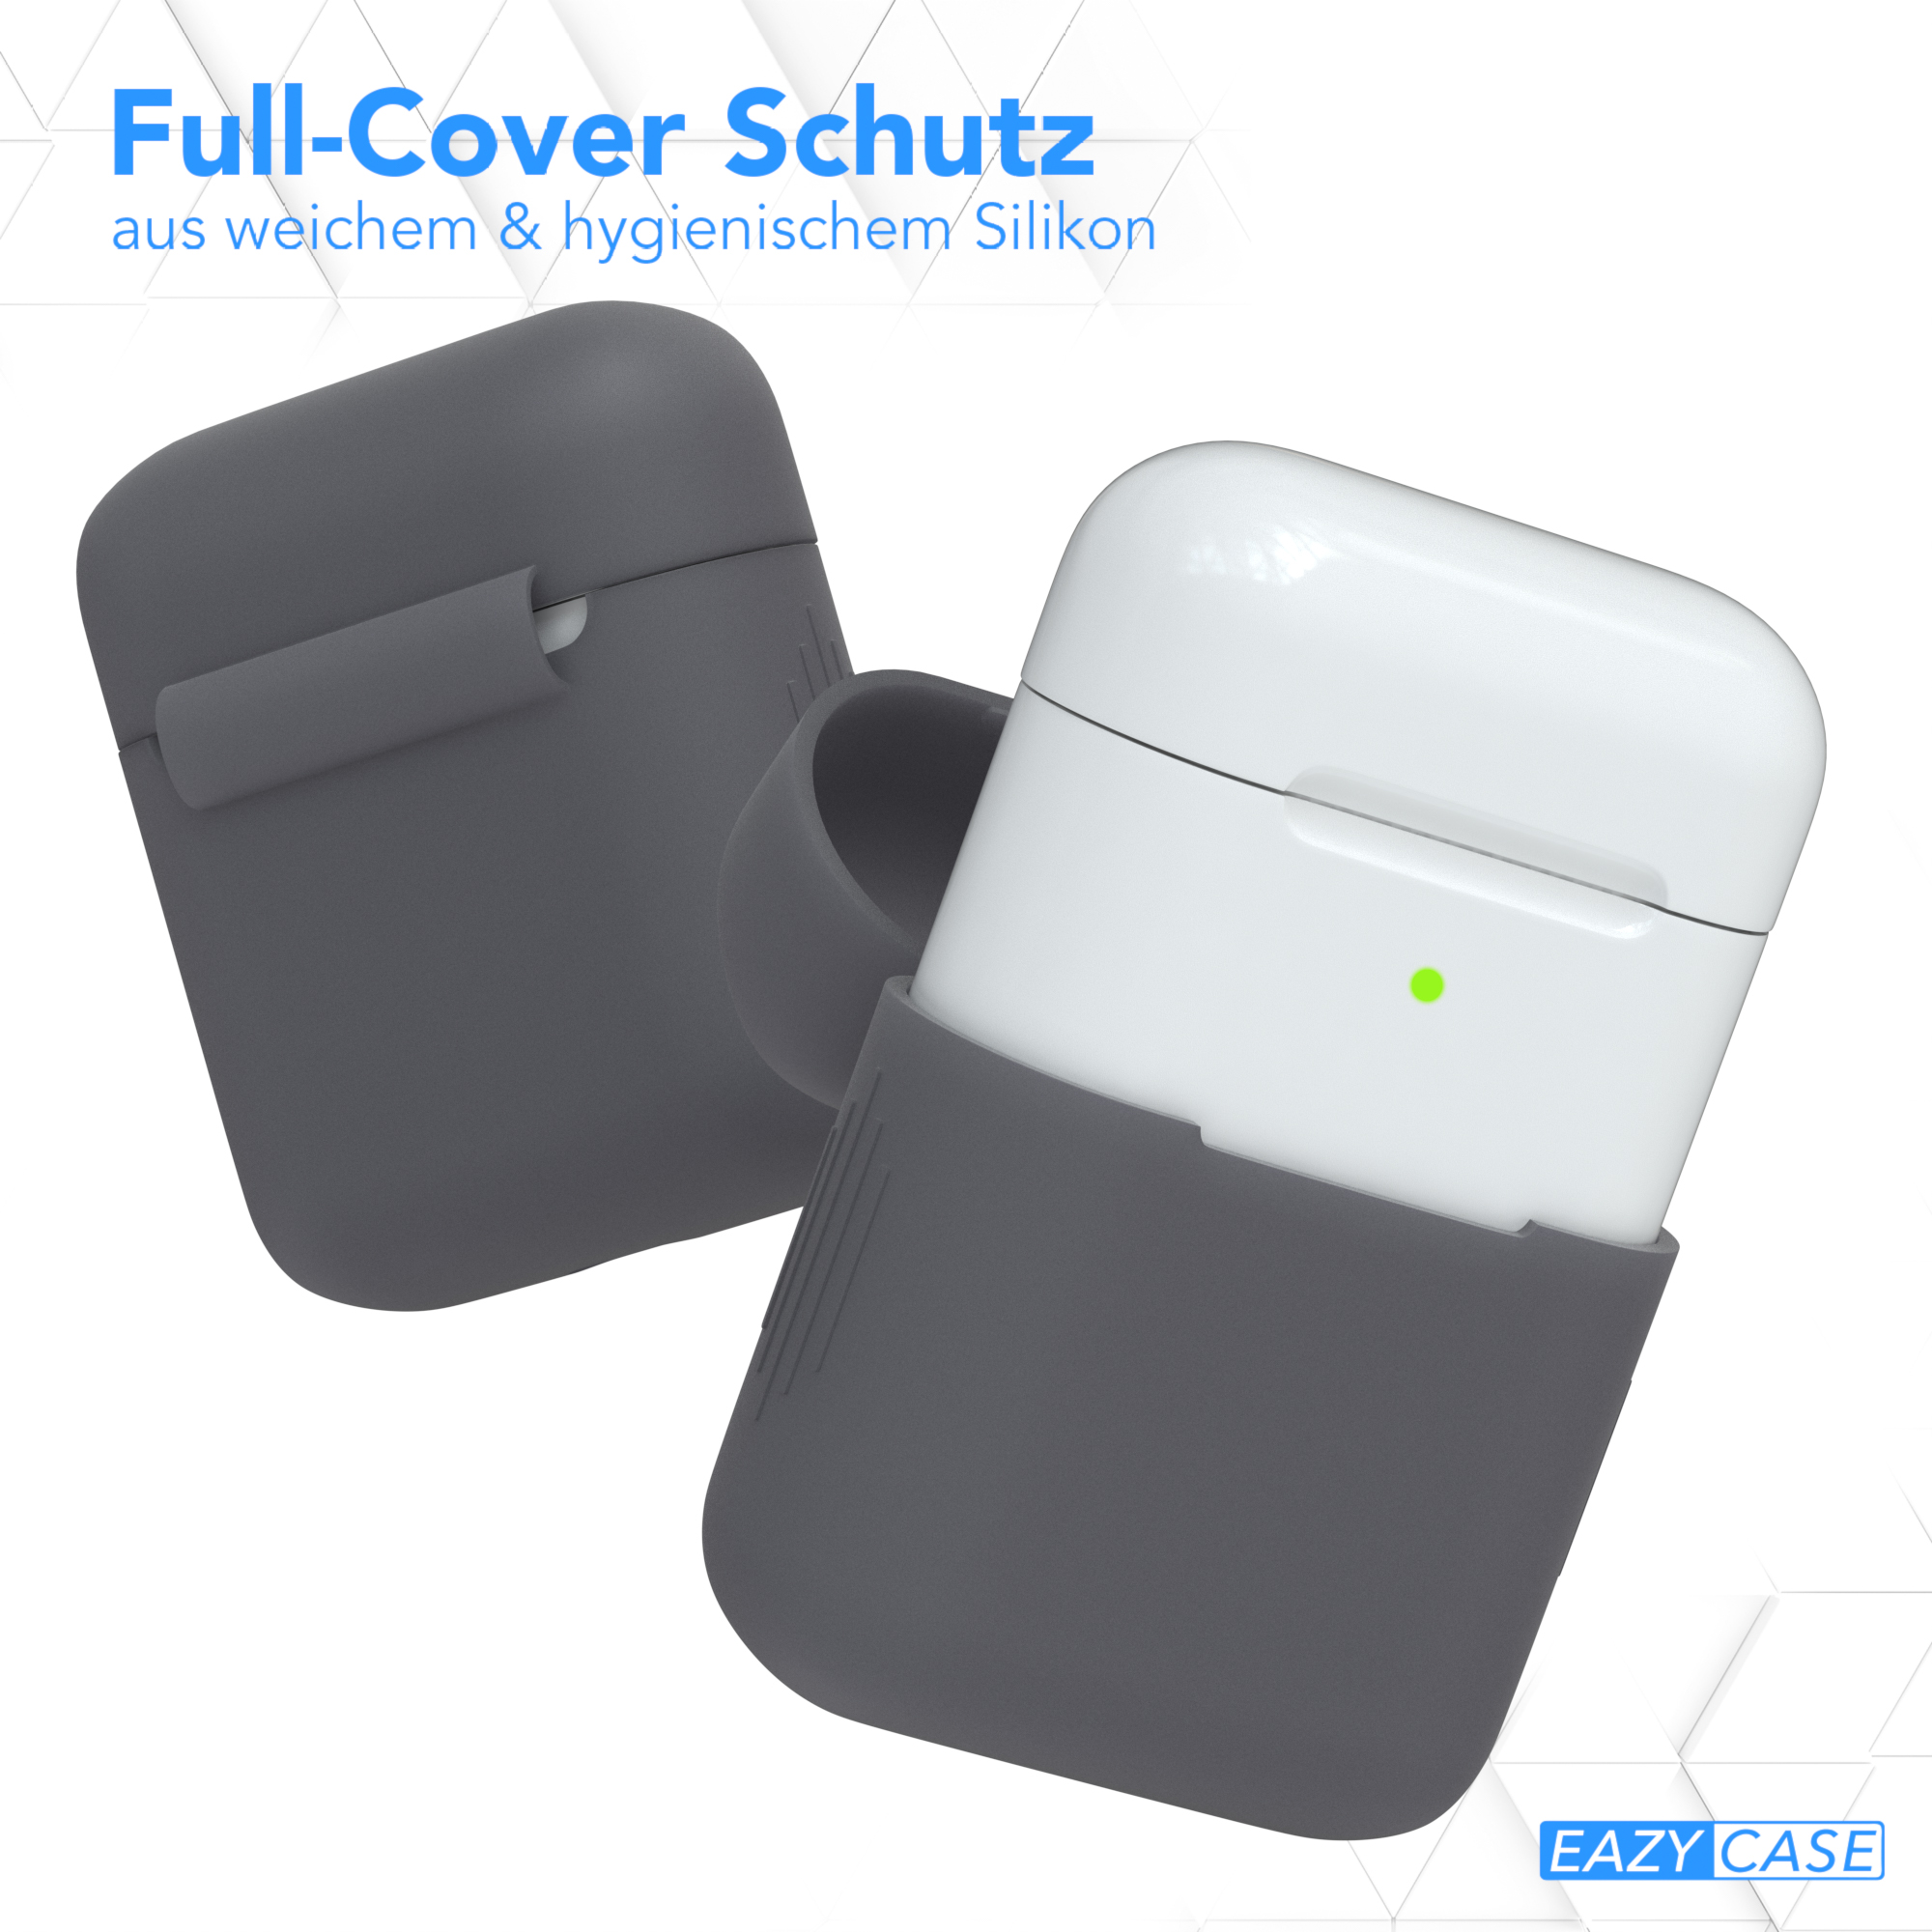 EAZY CASE AirPods Silikon Case Sleeve für: Apple Schutzhülle passend Anthrazit Grau